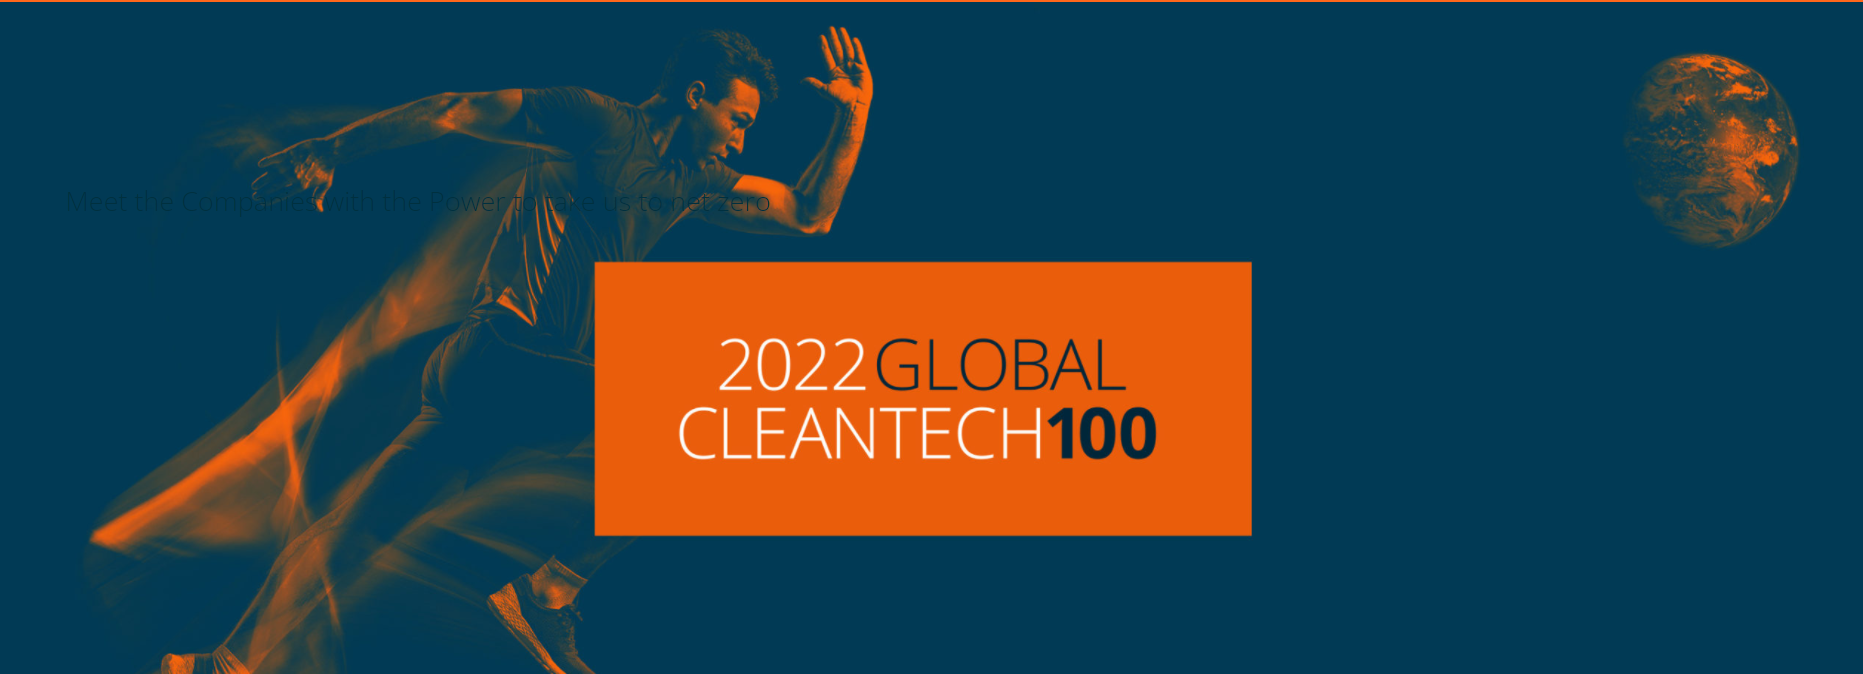 Global Cleantech 100 - 2022